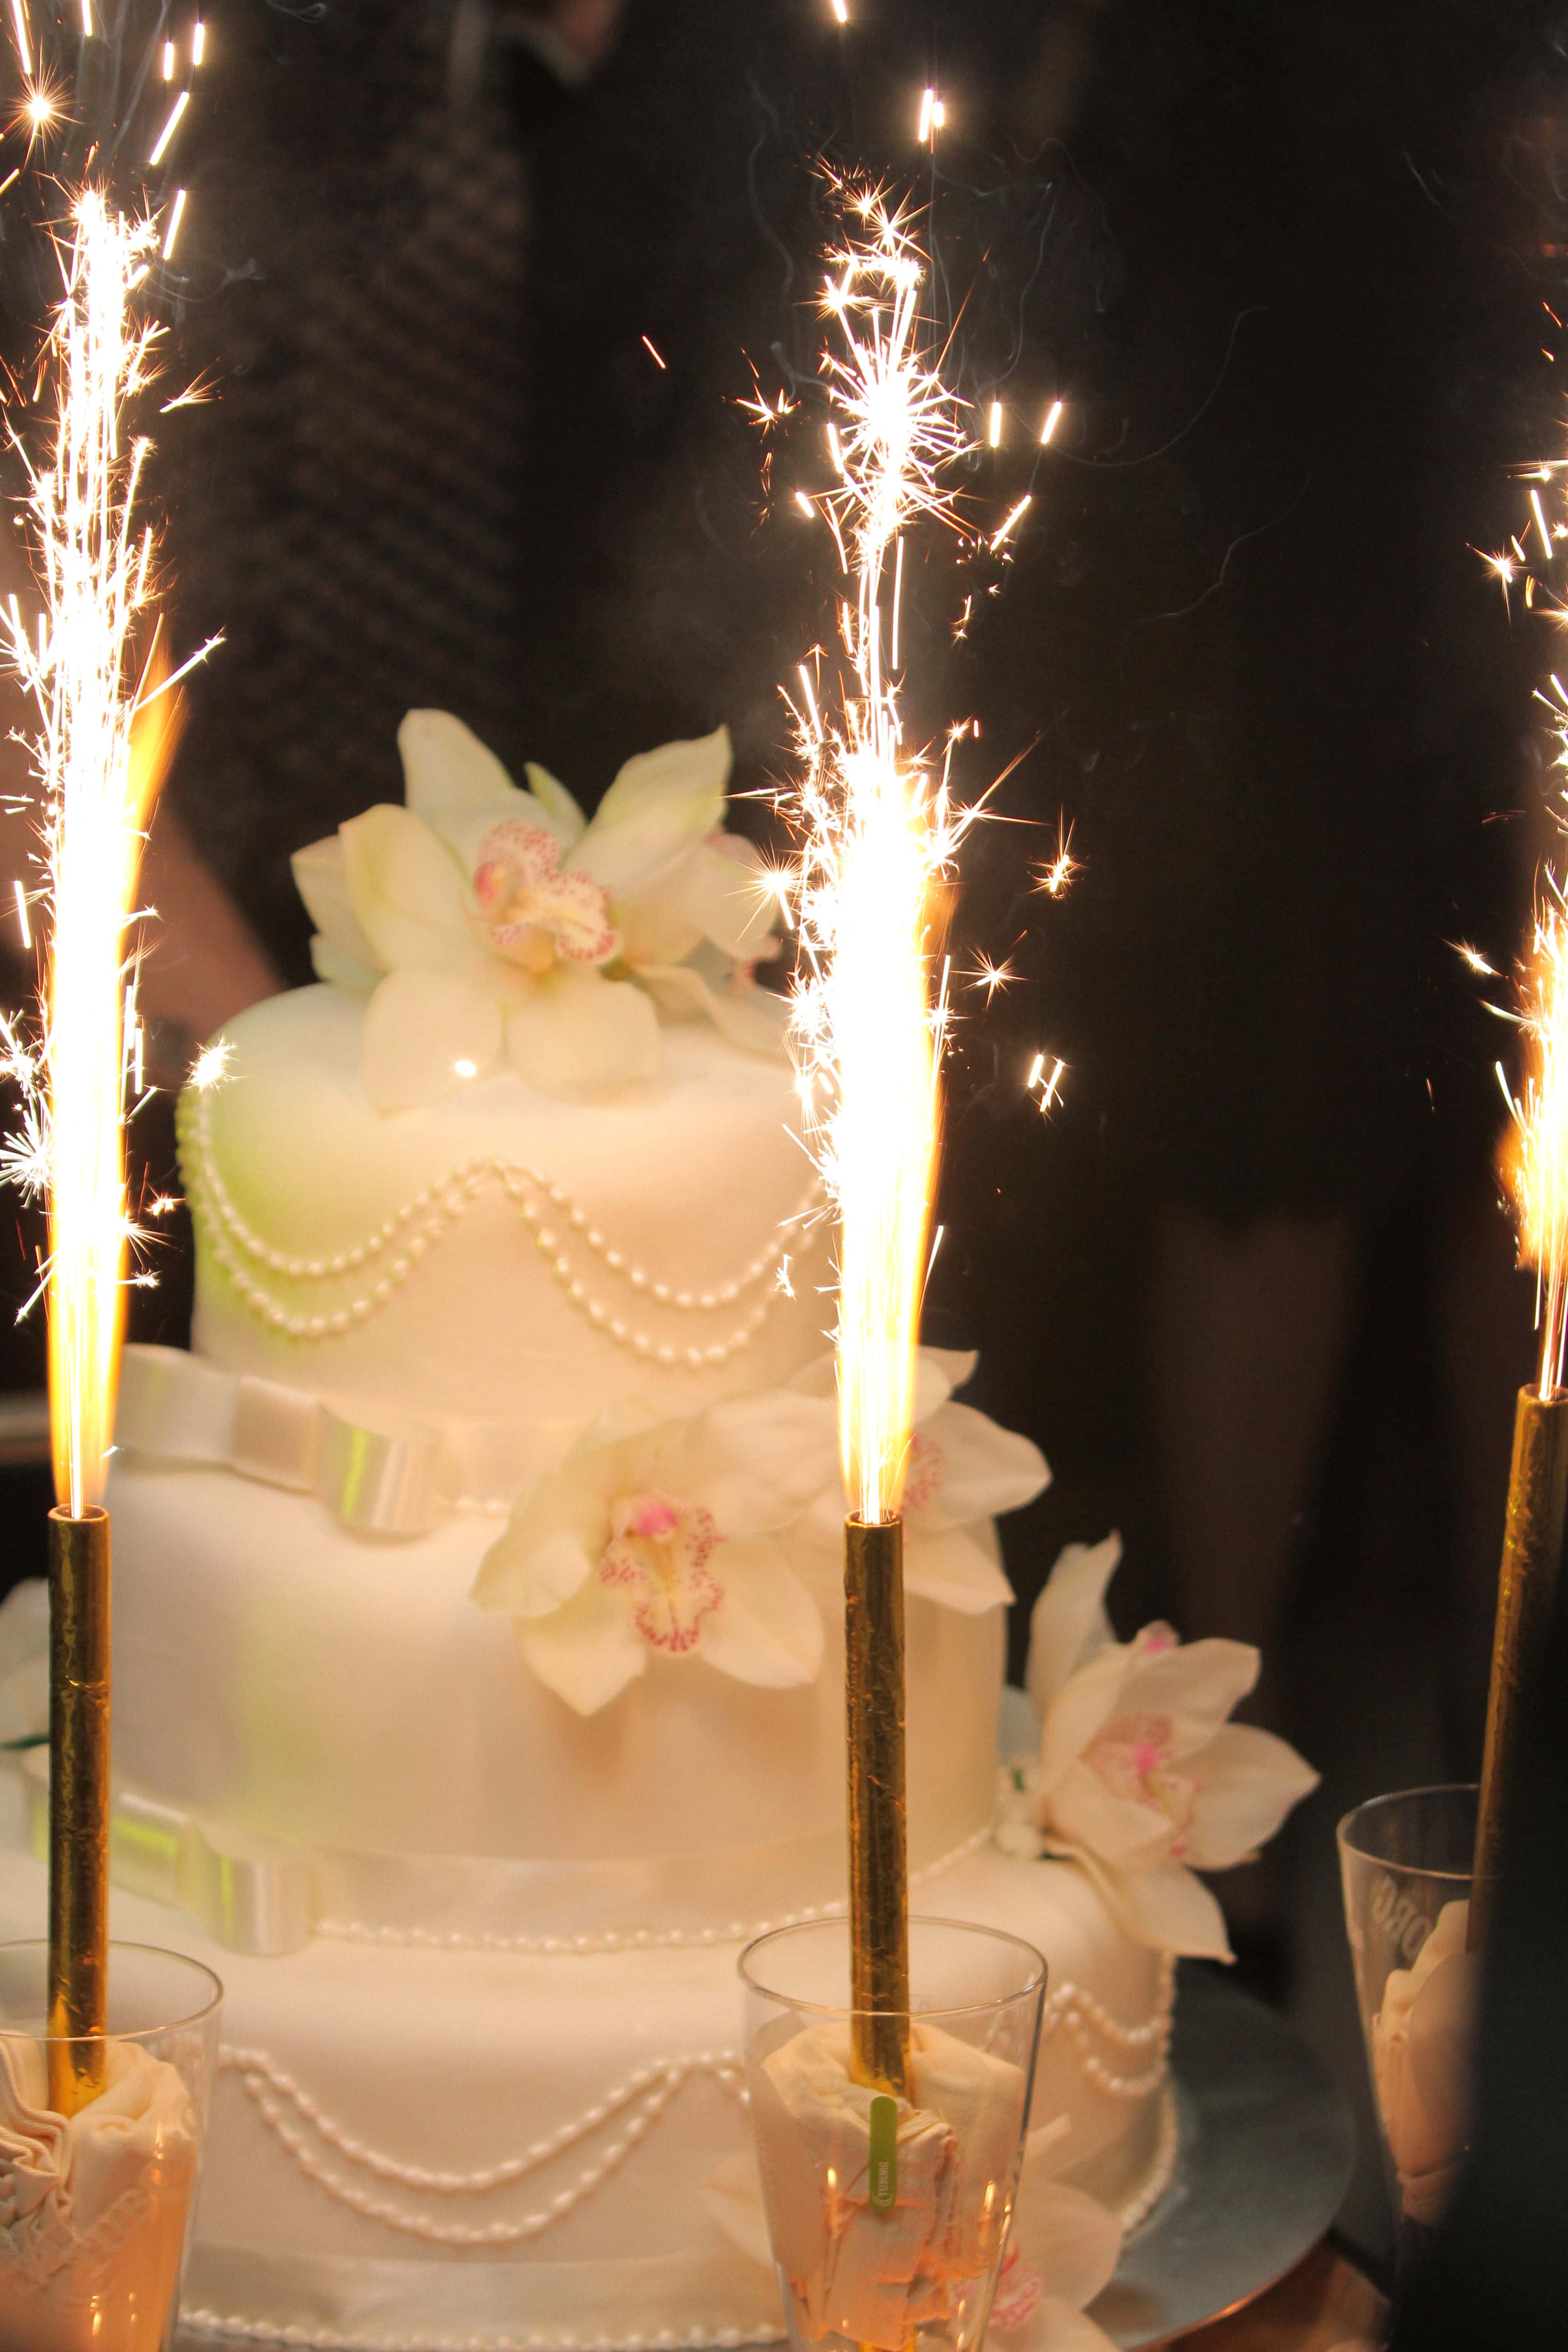 Image libre: cérémonie, décoration, événement, étincelle, mariage, gâteau  de mariage, bougie, célébration, gâteau, bougies